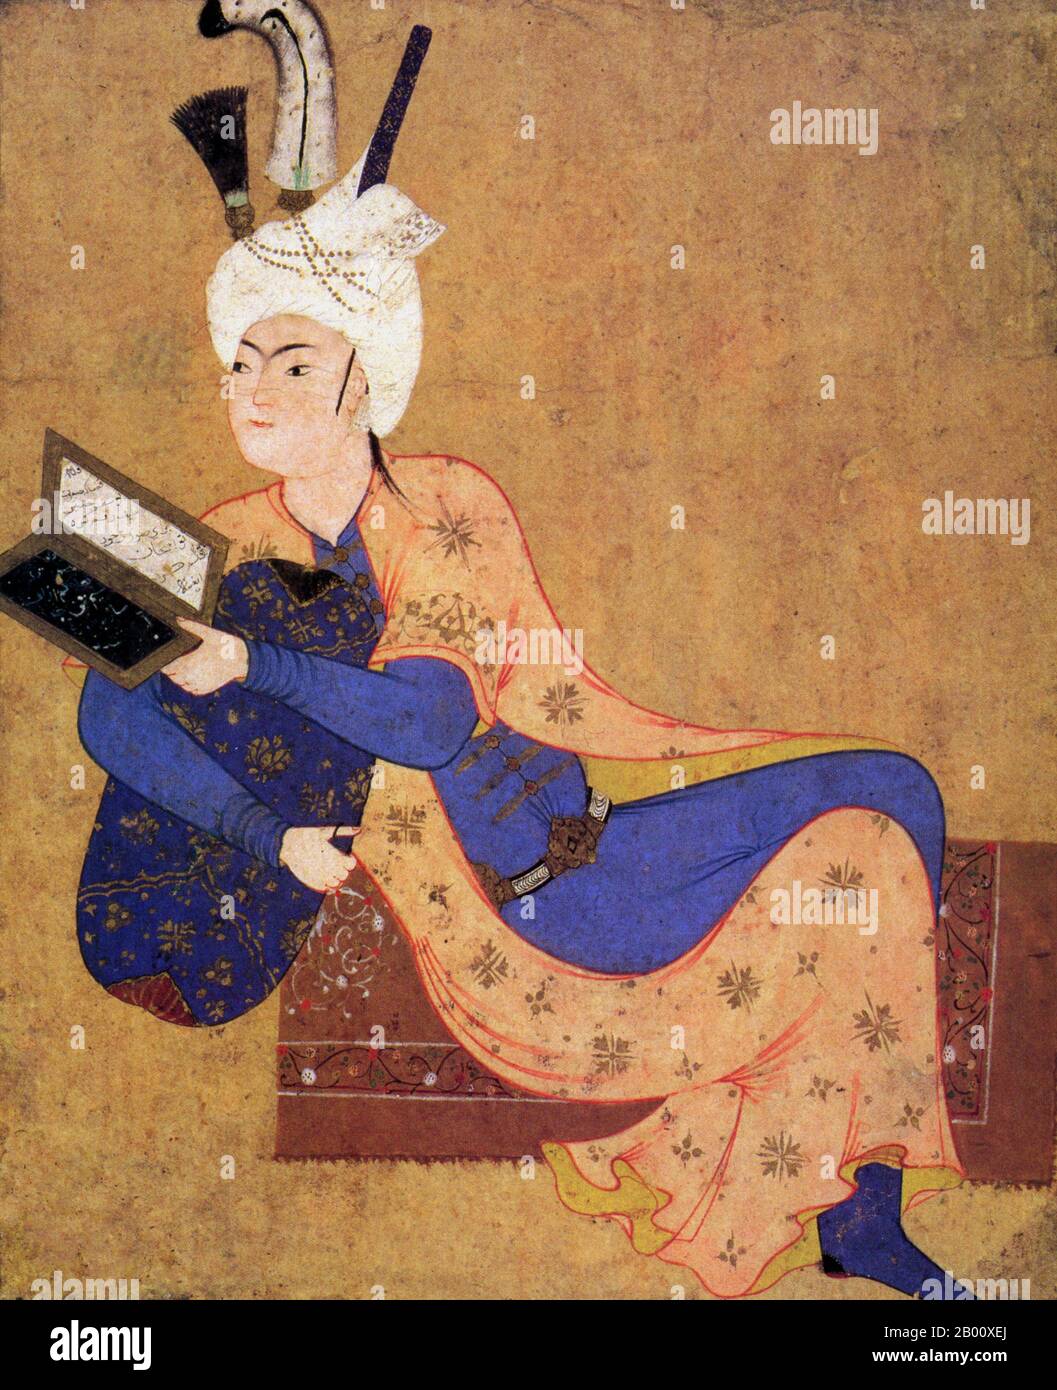 Iran: Une peinture miniature par AQA Mirak (fl. 1520-1576) d'un prince de Tabriz en repos, c. 1530 CE. Tabriz a été la capitale de l'empire safavide de 1501 à 1548, au cours de laquelle de nombreux grands peintres, tels que AQA Mirak, Mir Sayyid Ali et Dust Muhammad ont produit de magnifiques manuscrits royaux. L'art safavide est la référence pour la peinture, la littérature et l'architecture, ainsi que pour la céramique, le métal et le verre. Bien que nourrie bien sûr par la culture persane, une grande partie de l'art safavide a été fortement influencée par les cultures turques, chinoises, ottomanes et occidentales. Banque D'Images